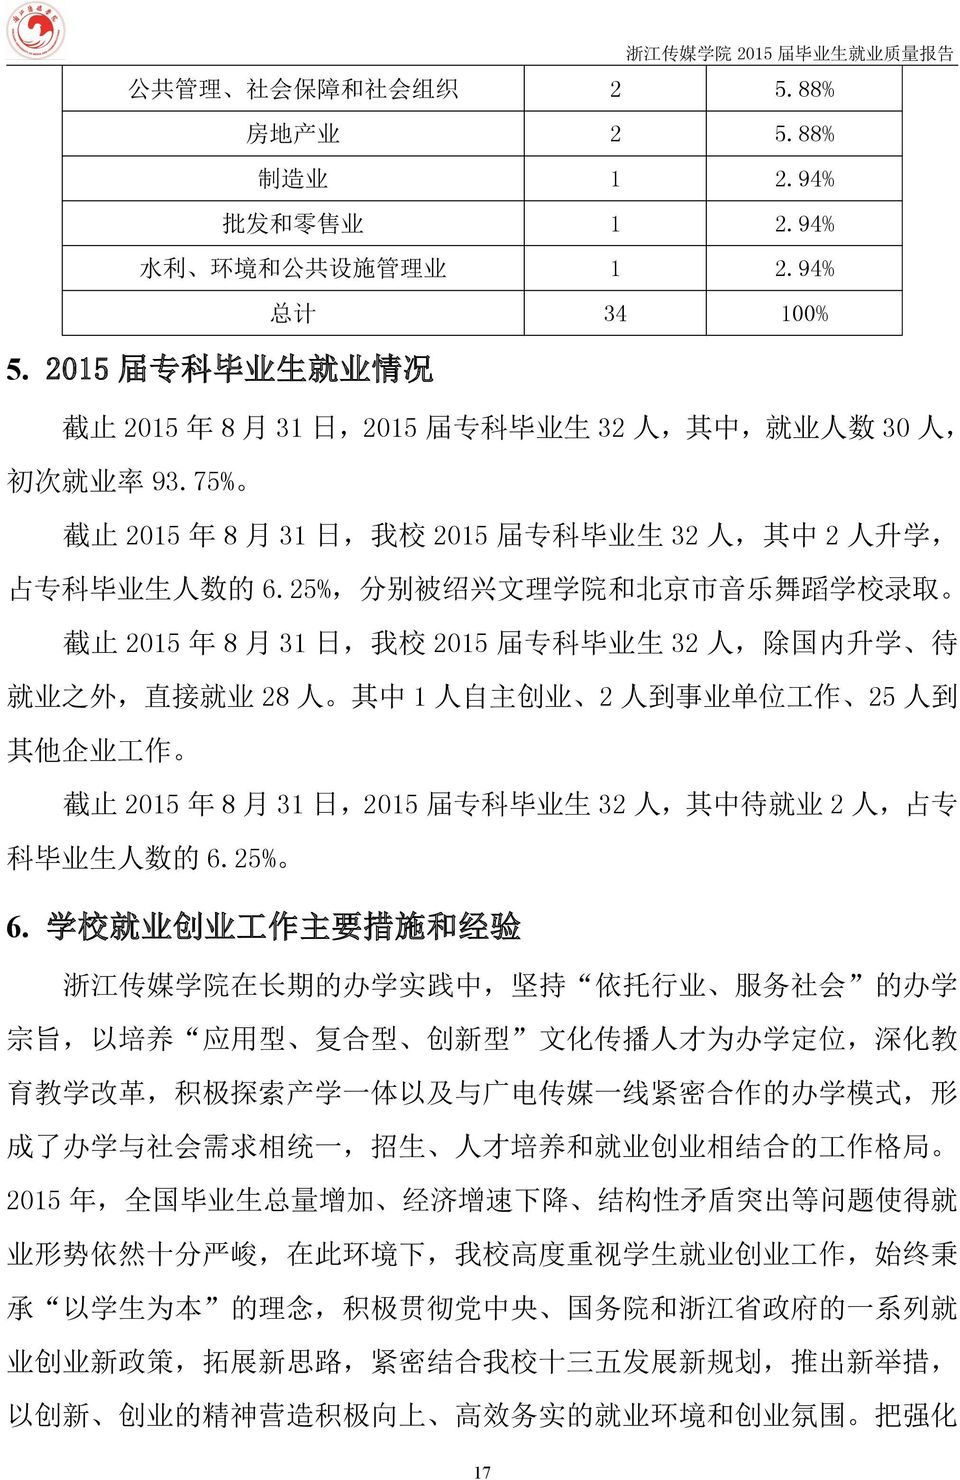 25%, 分 别 被 绍 兴 文 理 学 院 和 北 京 市 音 乐 舞 蹈 学 校 录 取 截 止 2015 年 8 月 31 日, 我 校 2015 届 专 科 毕 业 生 32 人, 除 国 内 升 学 待 就 业 之 外, 直 接 就 业 28 人 其 中 1 人 自 主 创 业 2 人 到 事 业 单 位 工 作 25 人 到 其 他 企 业 工 作 截 止 2015 年 8 月 31